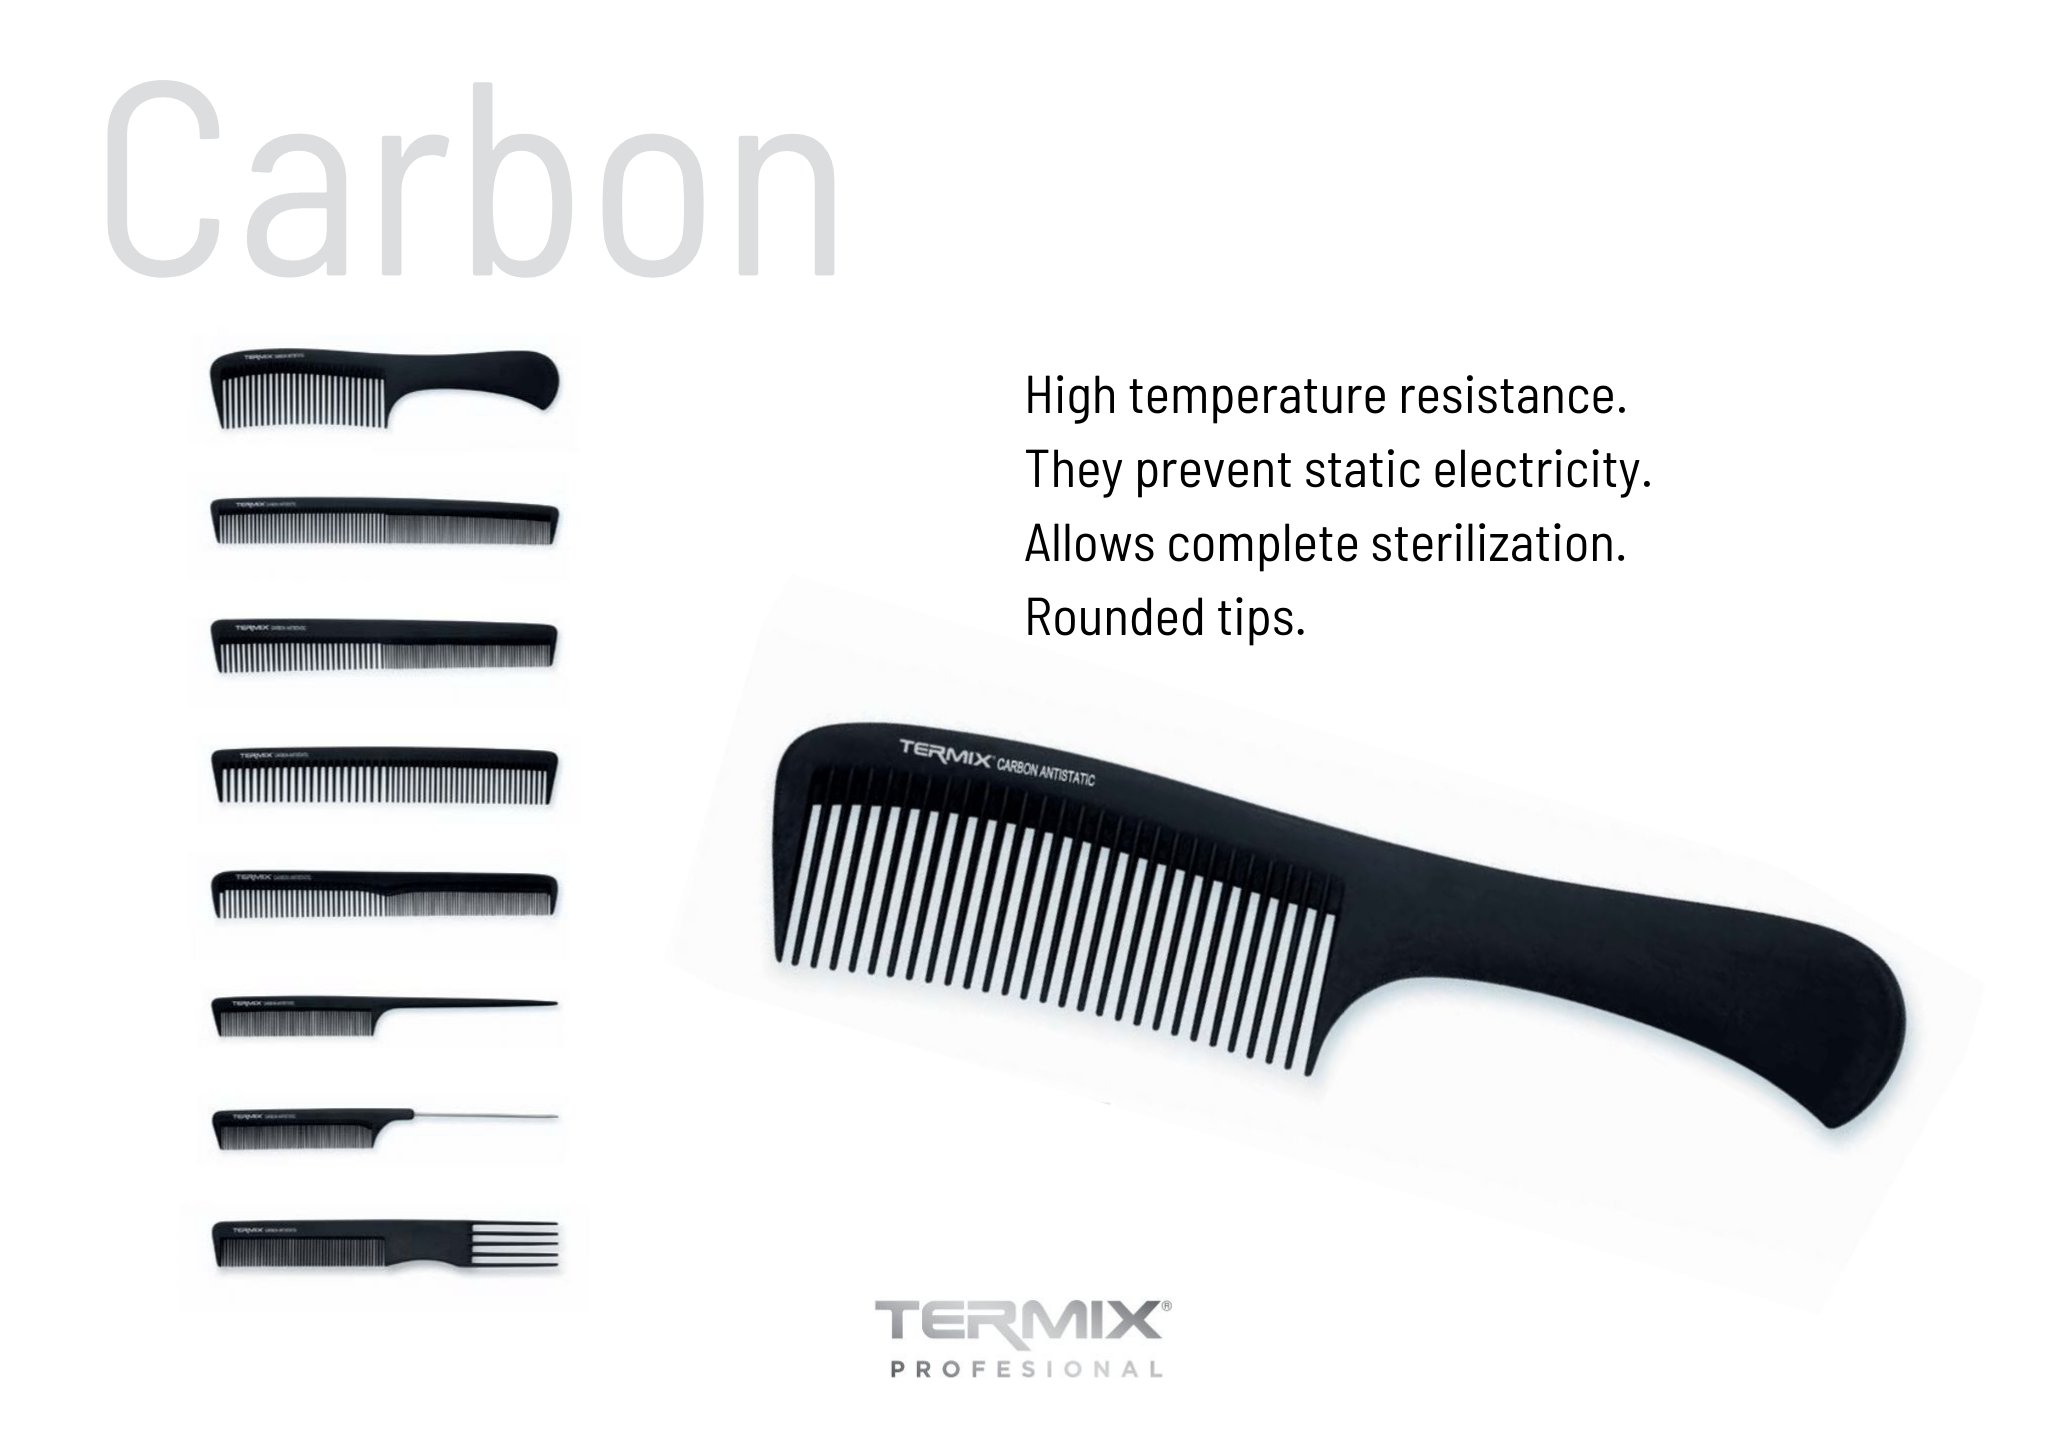 Carbon comb characteristics